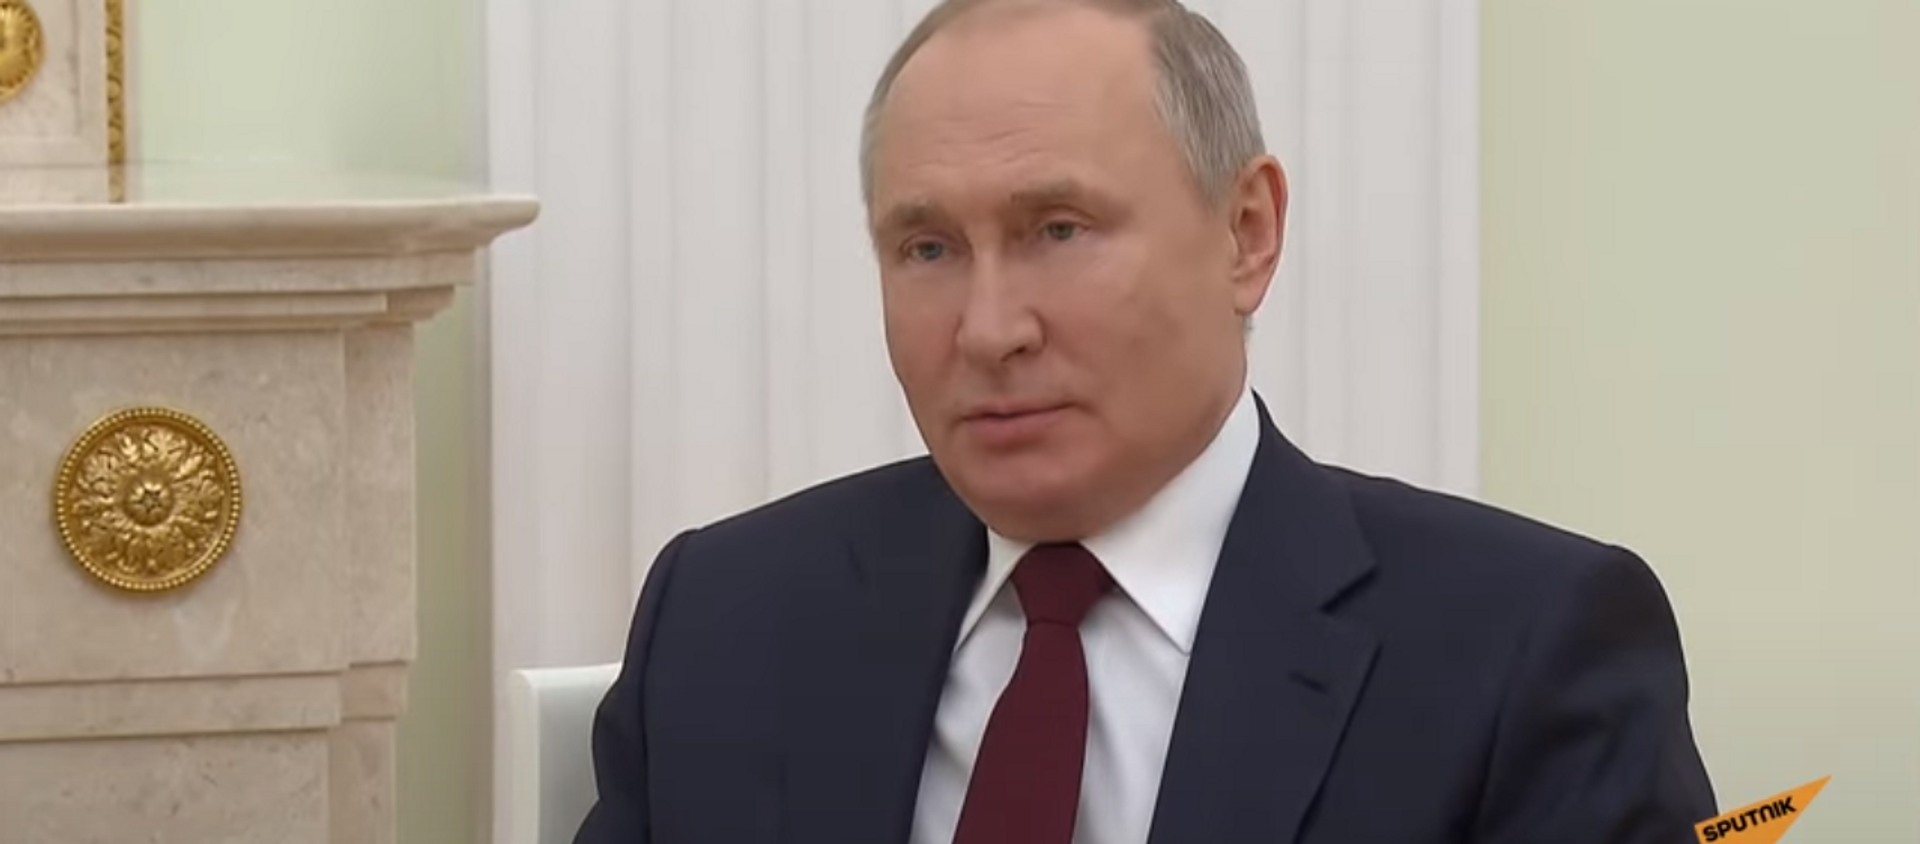 Путин ответил на предложение Зеленского о встрече в Донбассе - Sputnik Абхазия, 1920, 22.04.2021